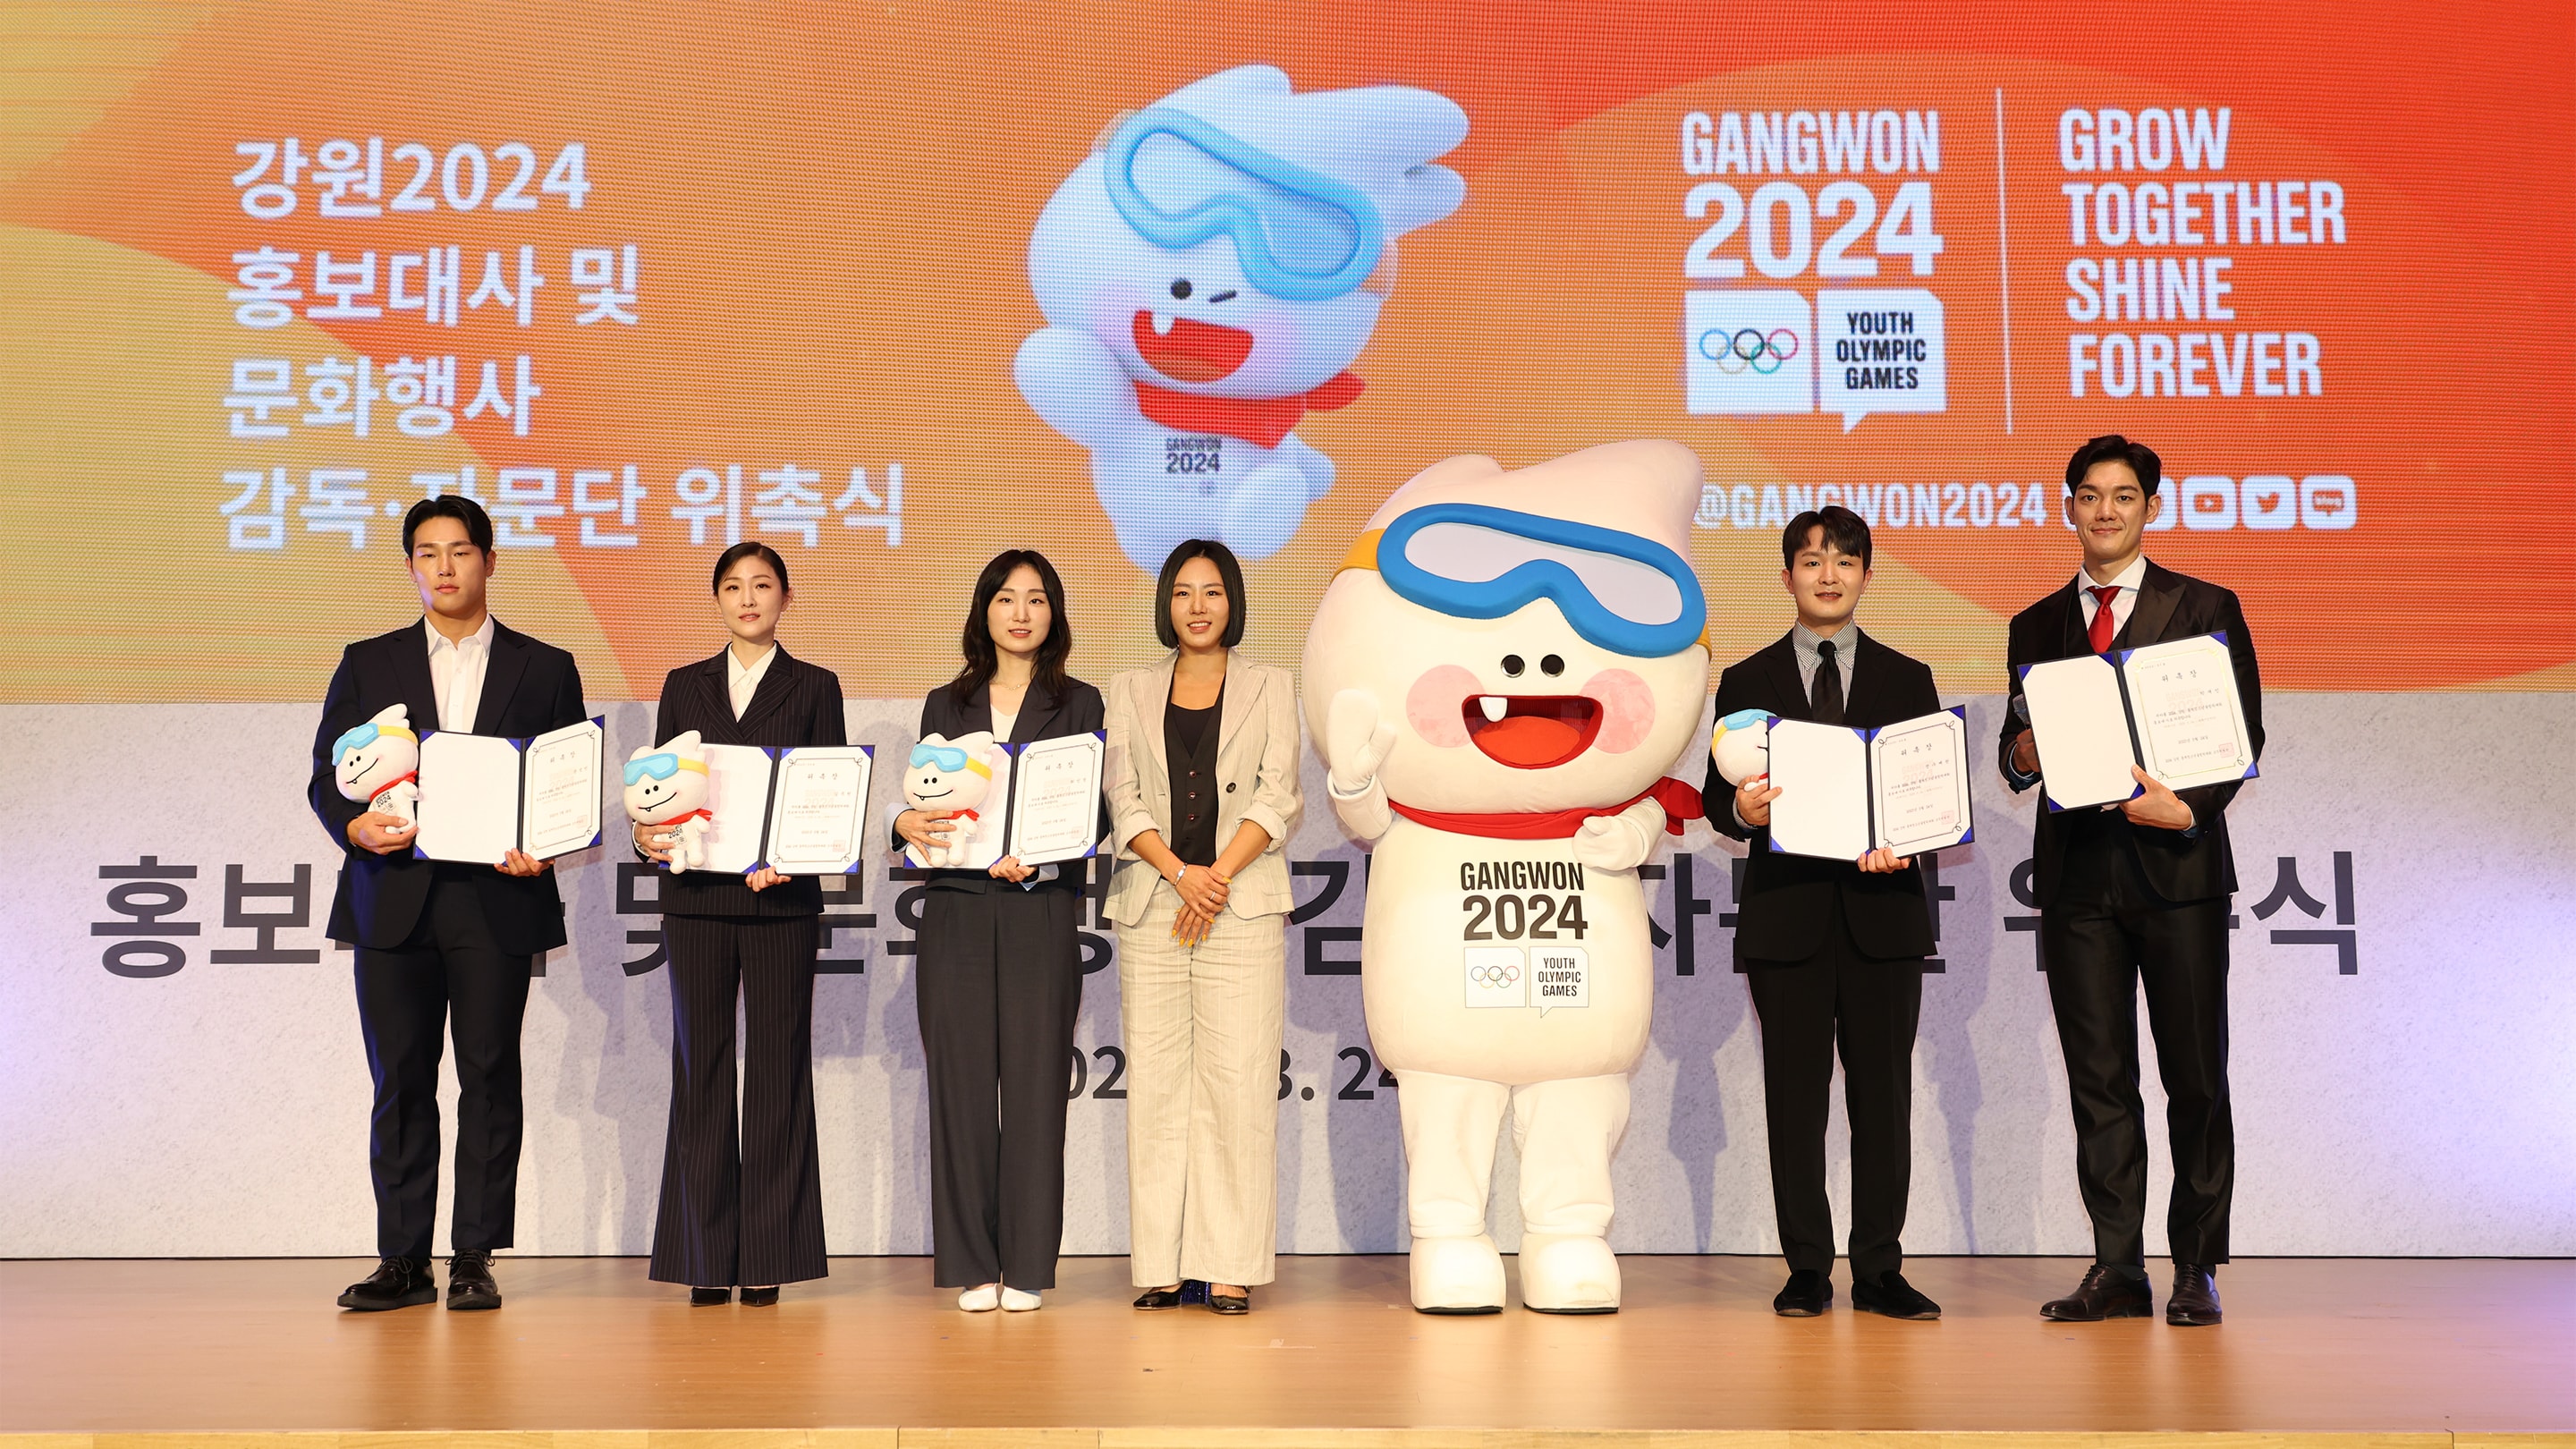 Gangwon 2024 célèbre les 300 jours avant la manifestation olympique en